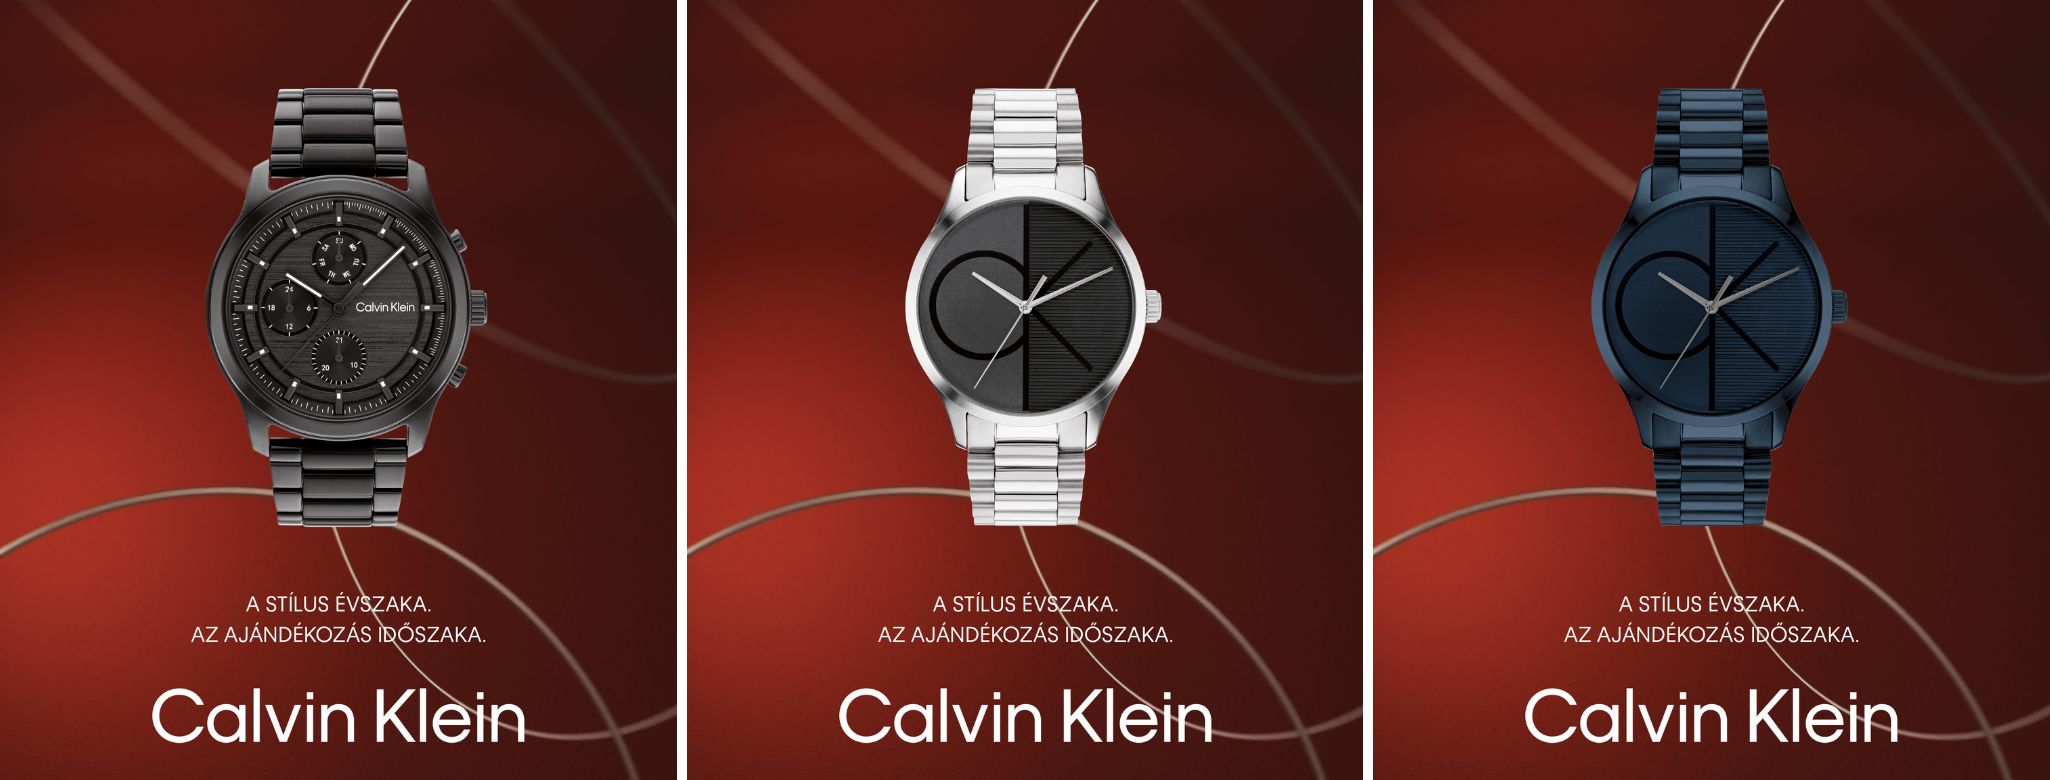 Karácsonyi ajándék férfiaknak: Calvin Klein óra